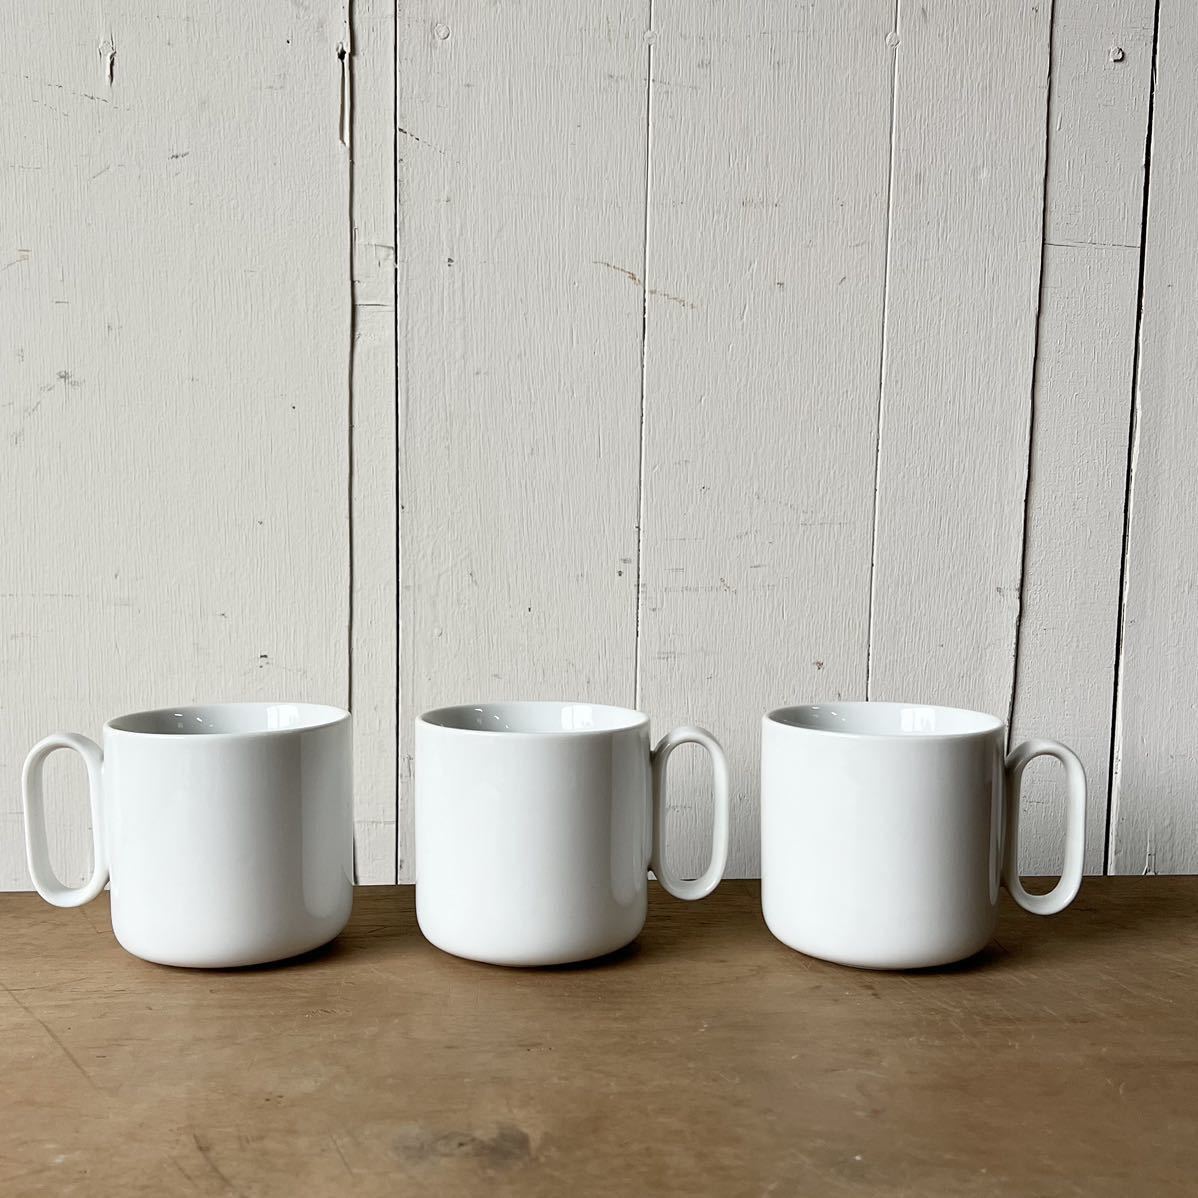 2個set Uハンドル マグカップ デットストック 白磁 陶器 検: コーヒーカップ ティーカップ カフェ レトロ ビンテージ アンティークの画像3